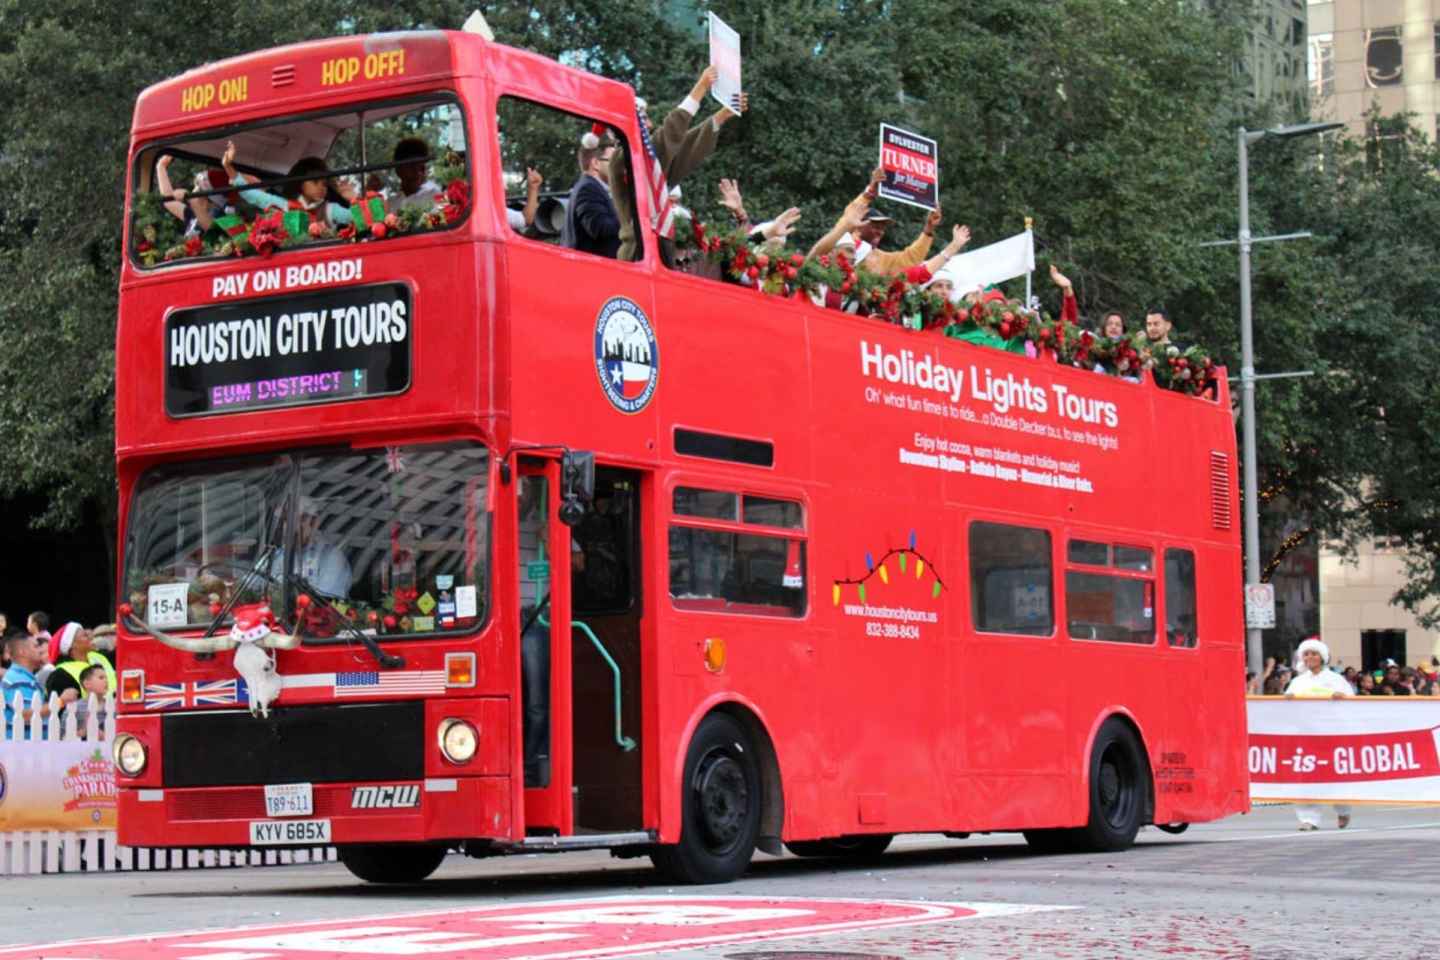 downtown houston tour bus